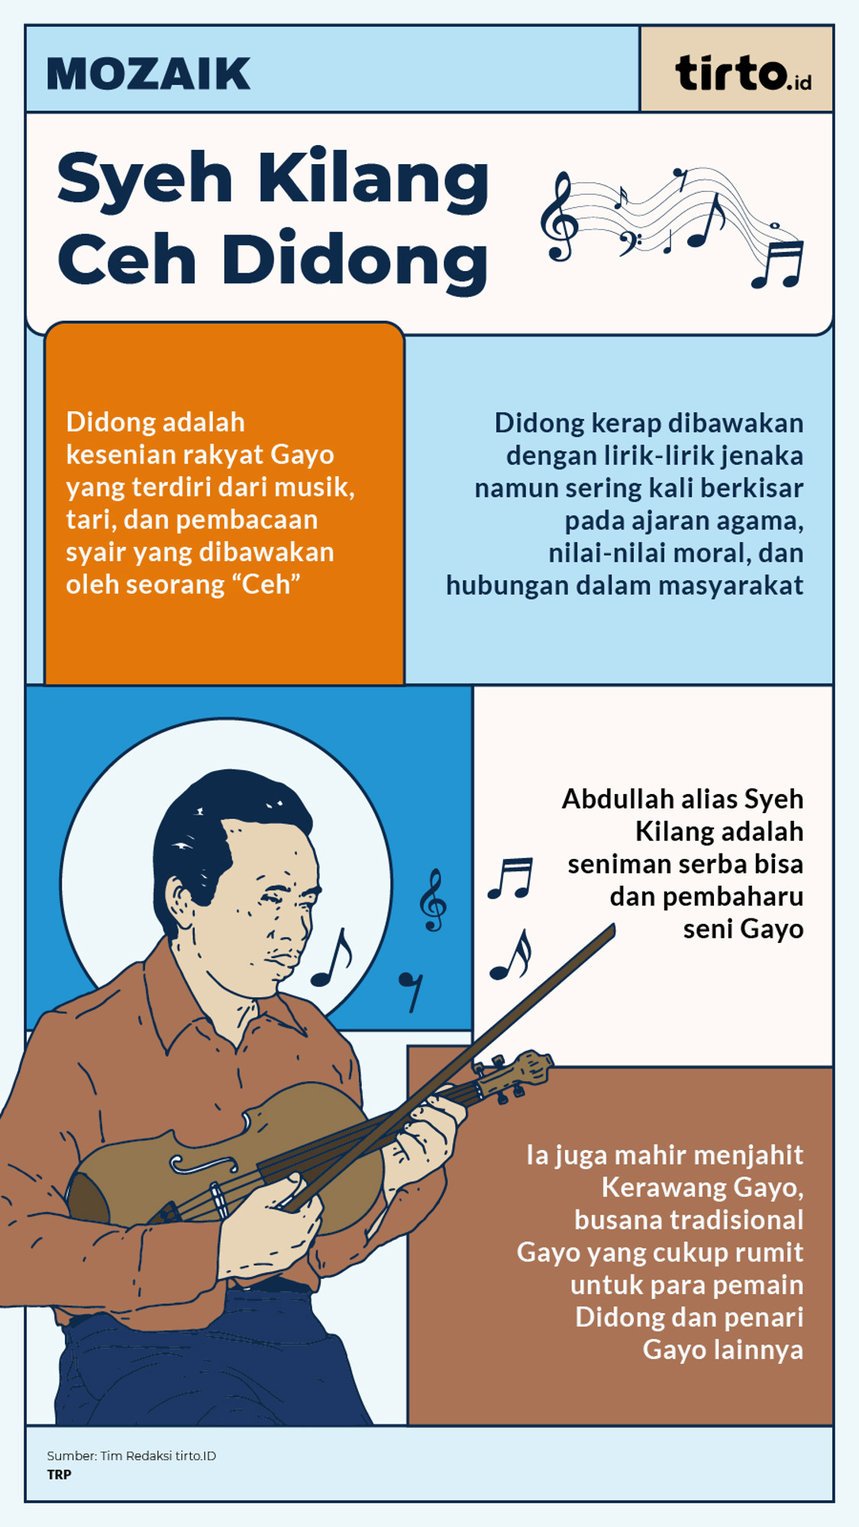 Infografik Mozaik Syeh Kilang Ceh Didong